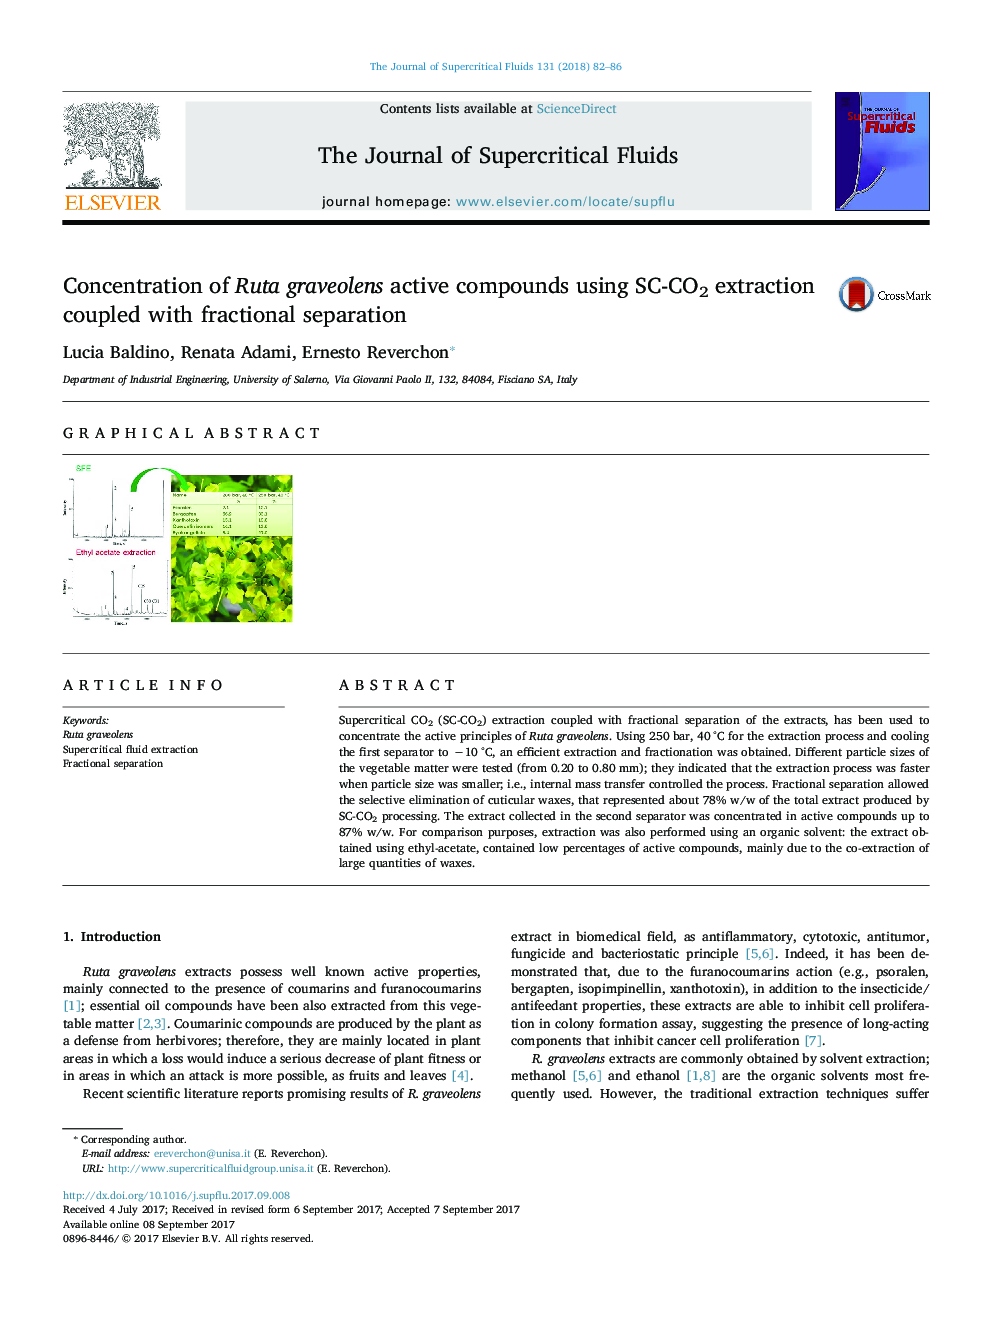 غلظت ترکیبات فعال روتا گراوولنز با استفاده از استخراج SC-CO2 و جداسازی جزئی